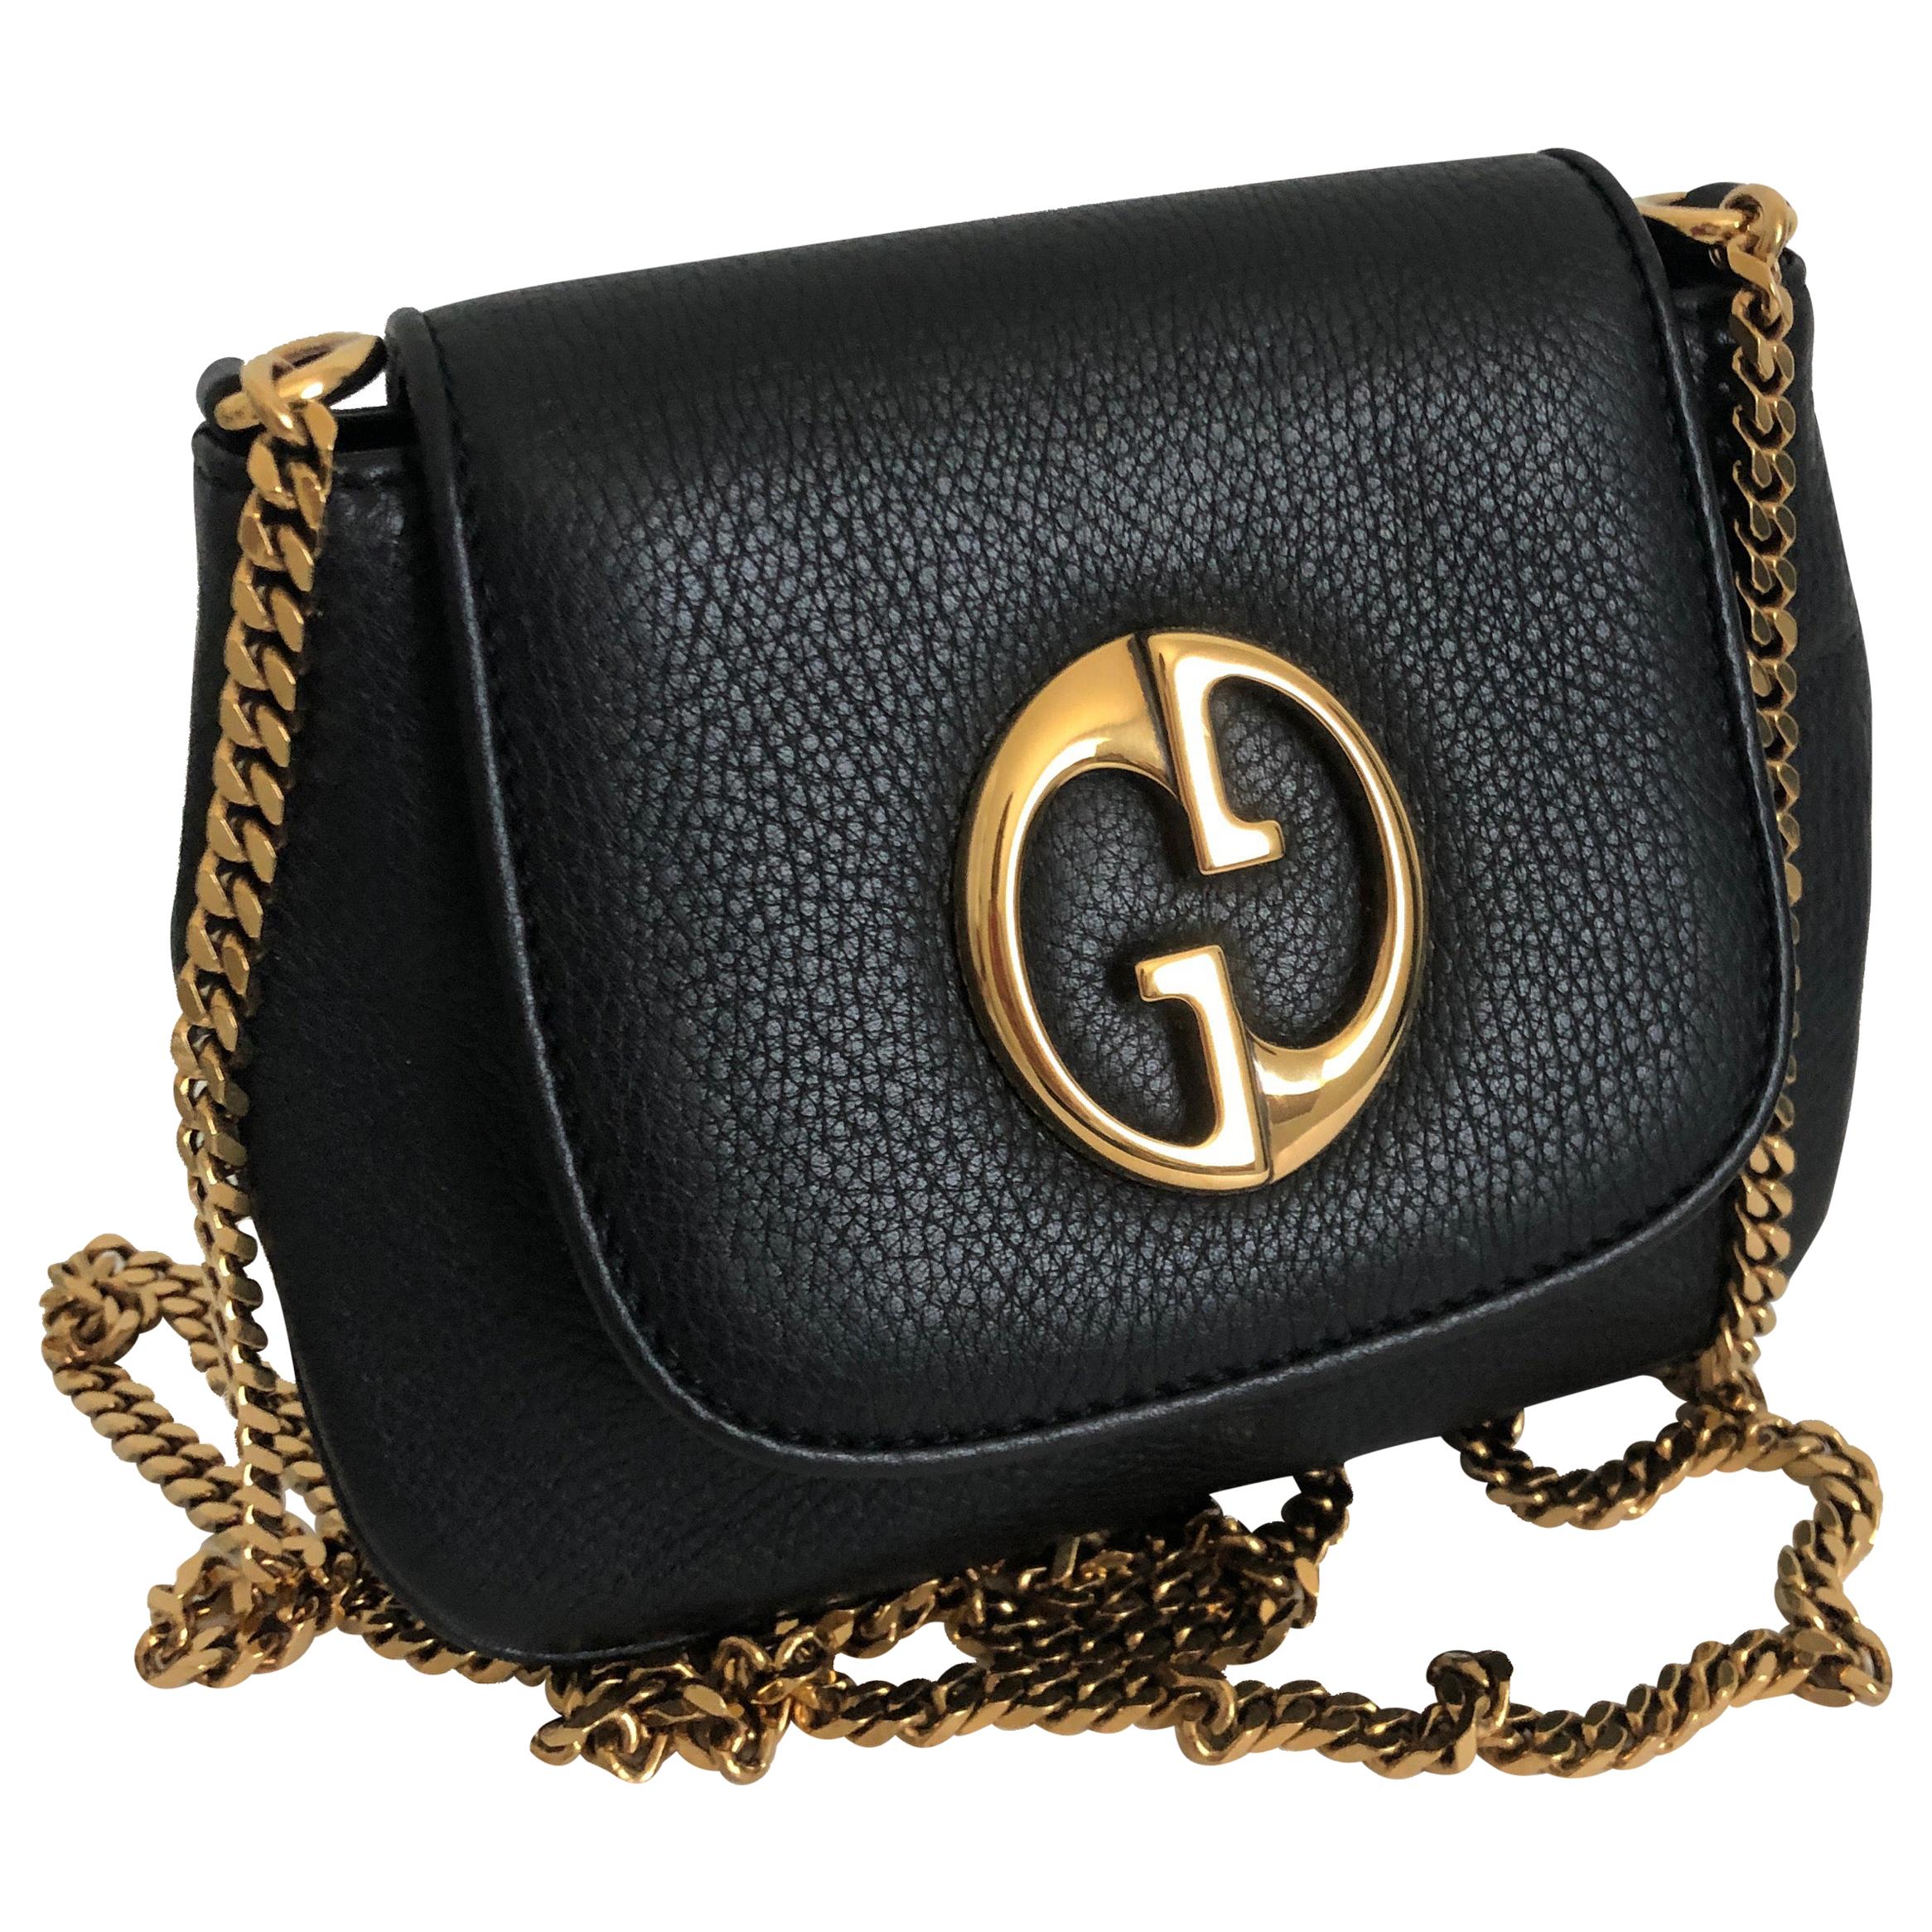 Gucci 1973 Shoulder Bag Black Pebbled Leather Messenger Bag NWOT